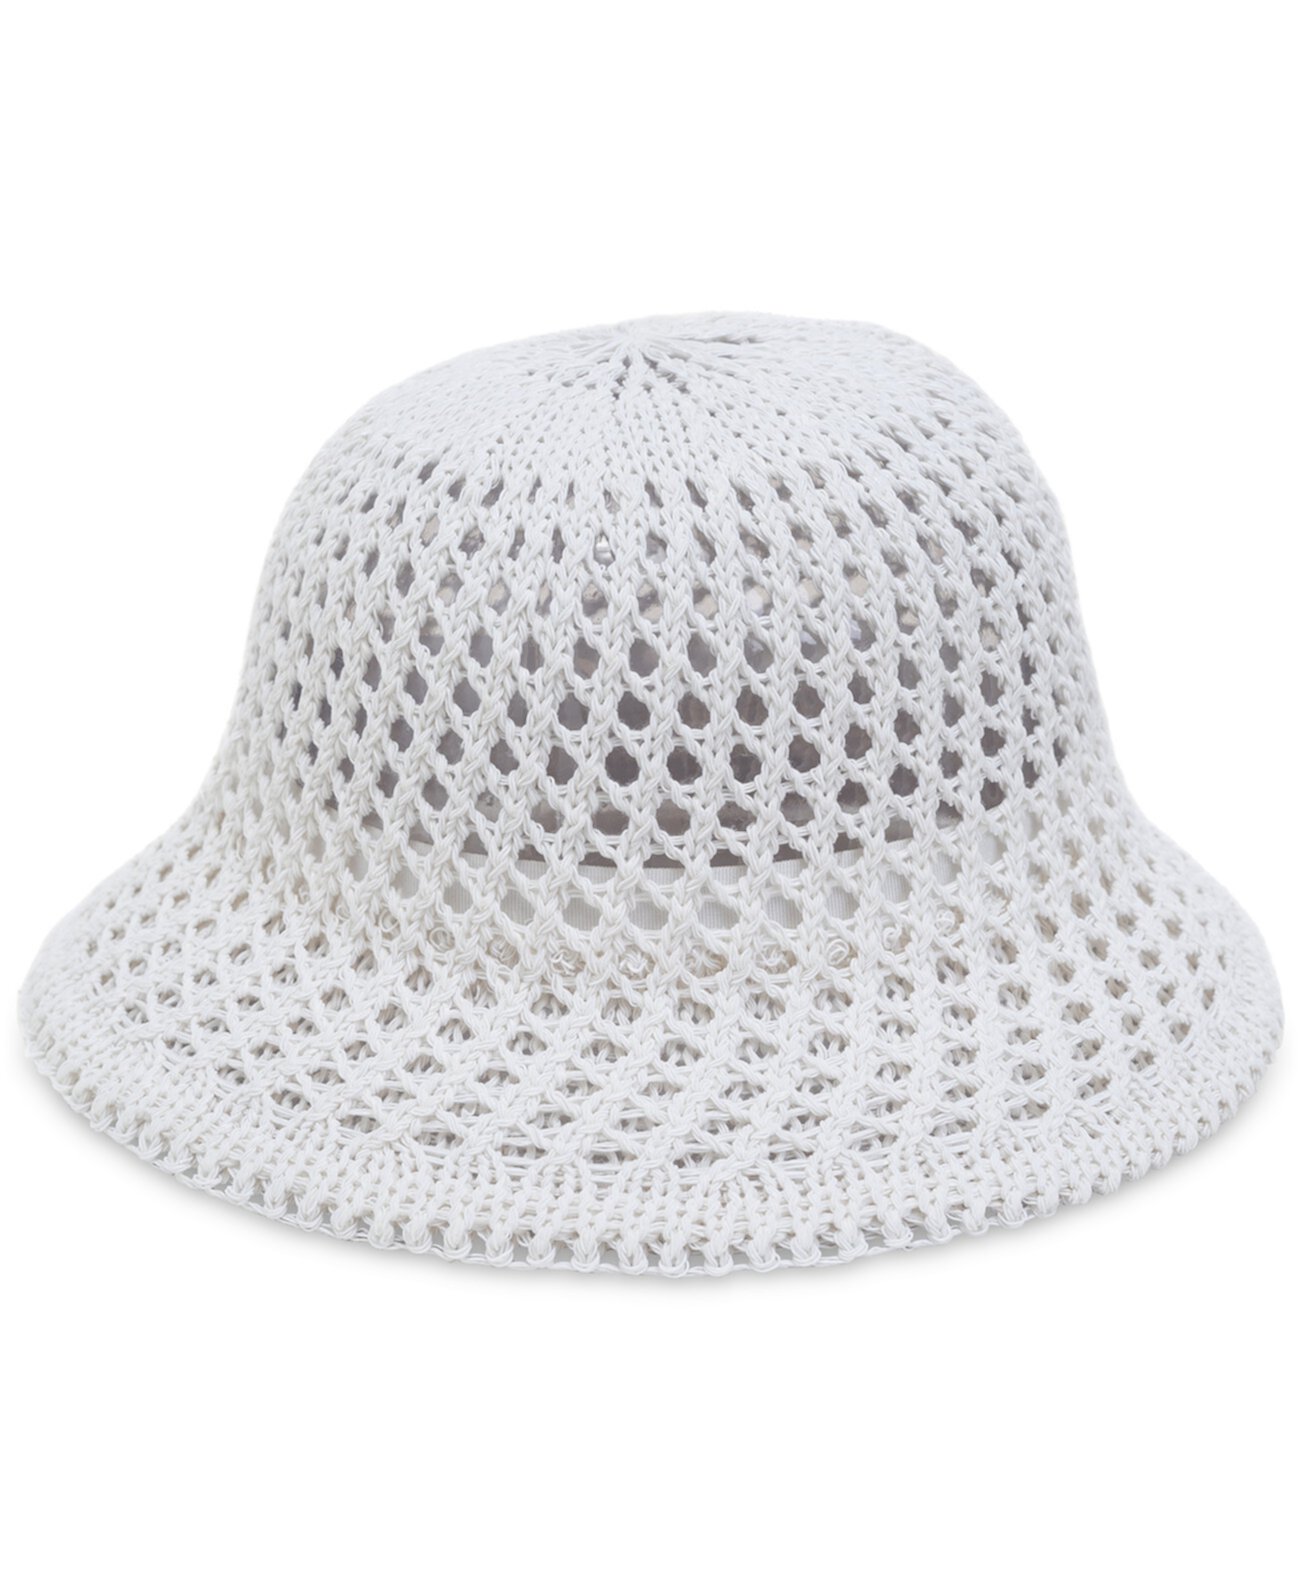 Женская шапка-клош открытой вязки крючком, созданная для Macy's On 34th